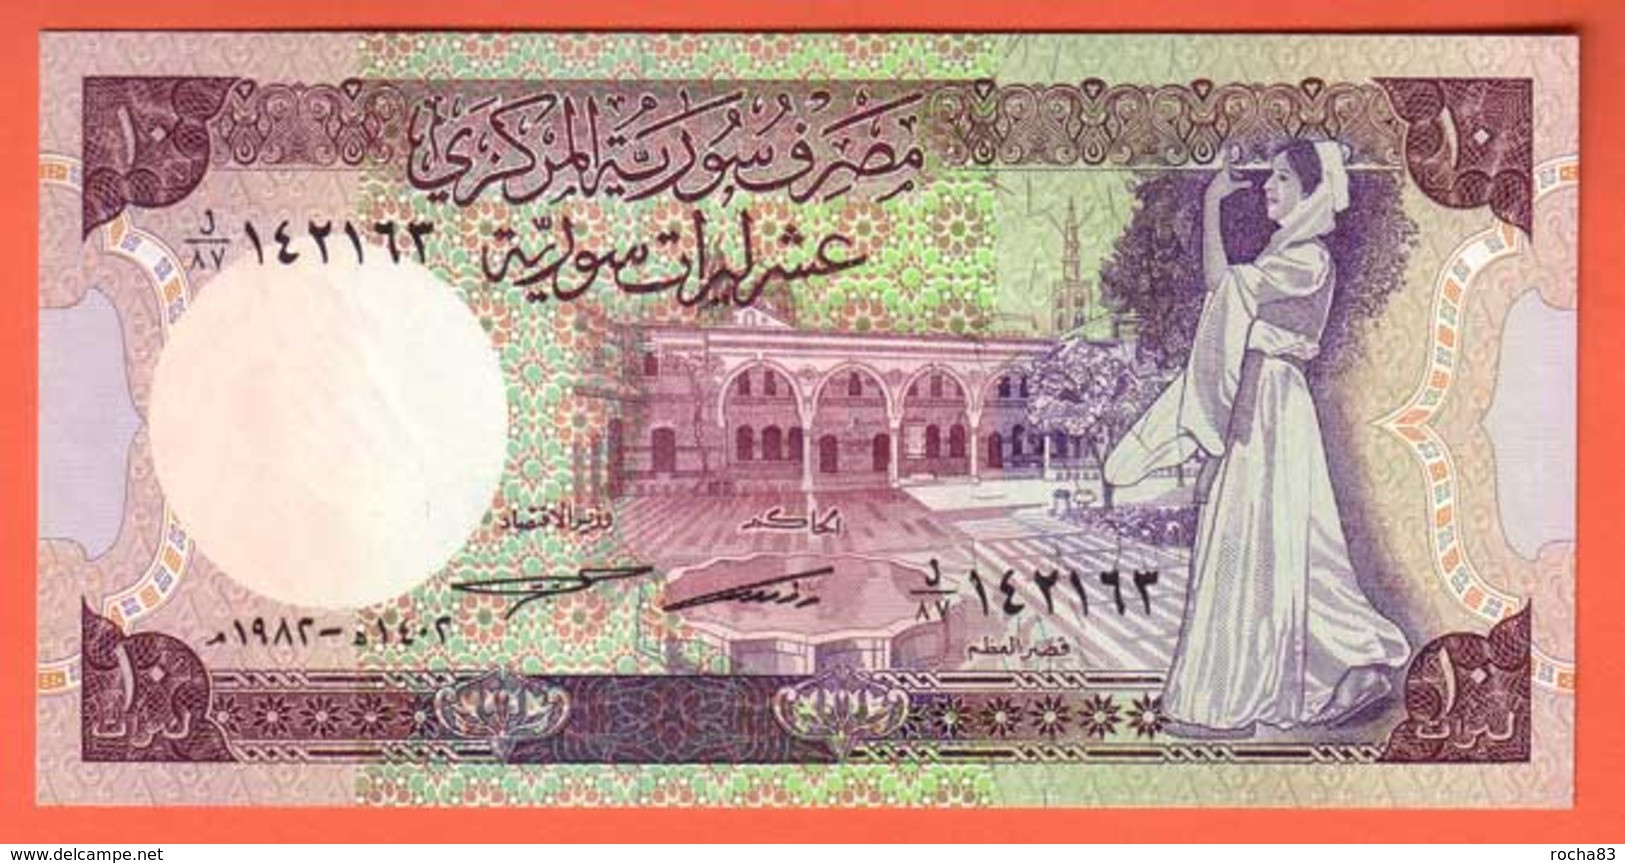 SYRIE  Billet 10 Pounds 1991  Pick 101e  NEUF - Syrie